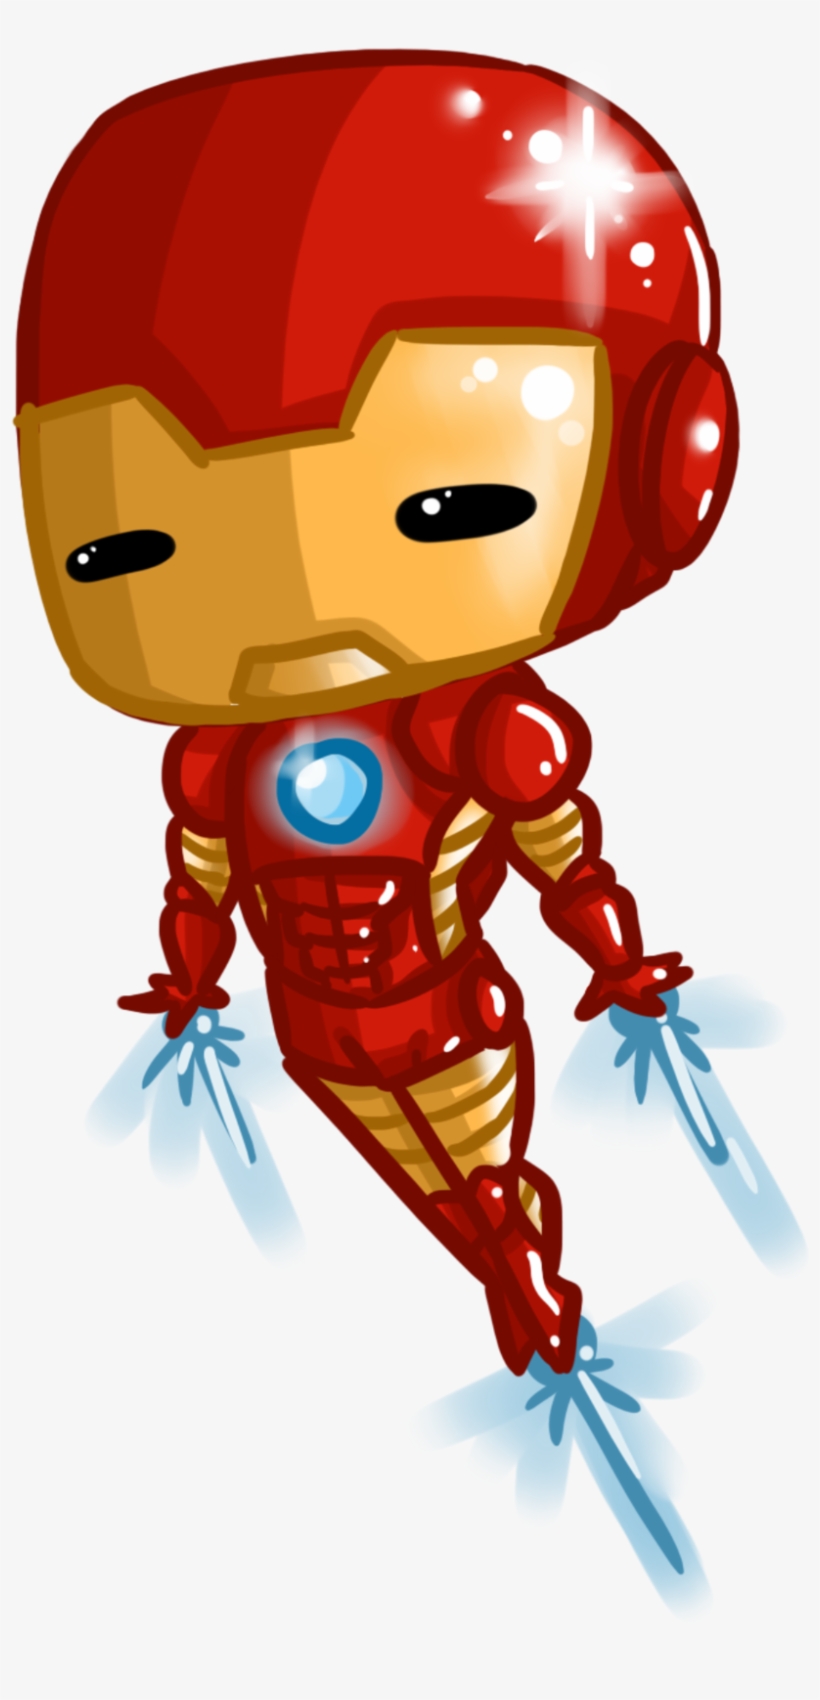 Iron Man - Chibi Avengers Iron Man - Free Transparent PNG Download ...